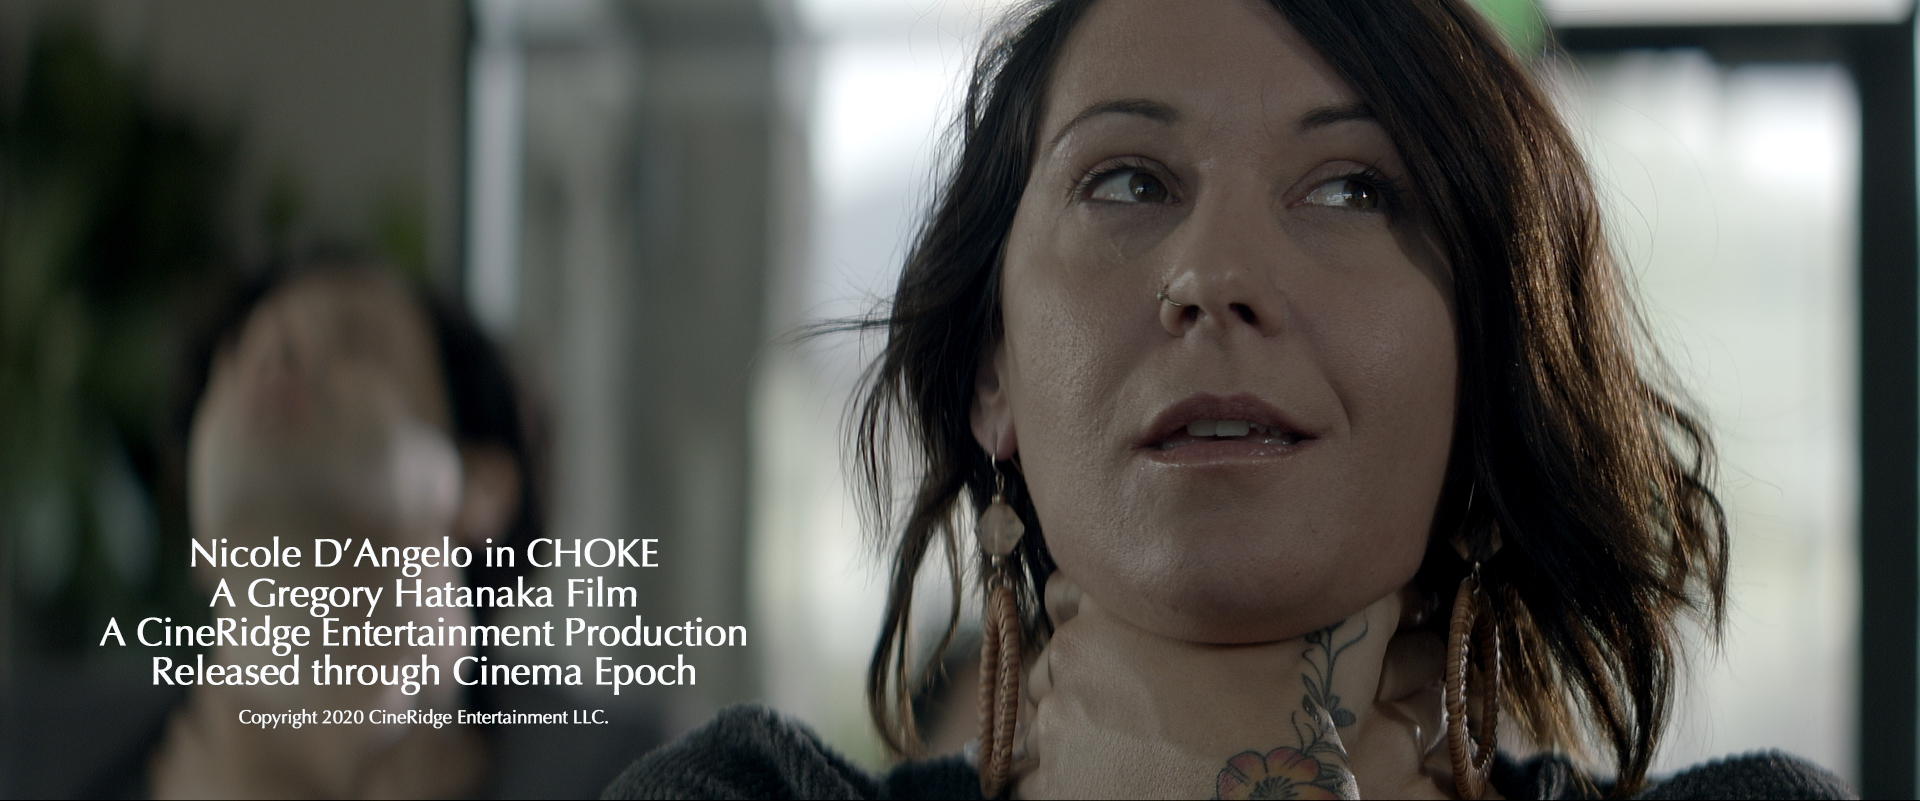 Choke (2020) Screenshot 3 